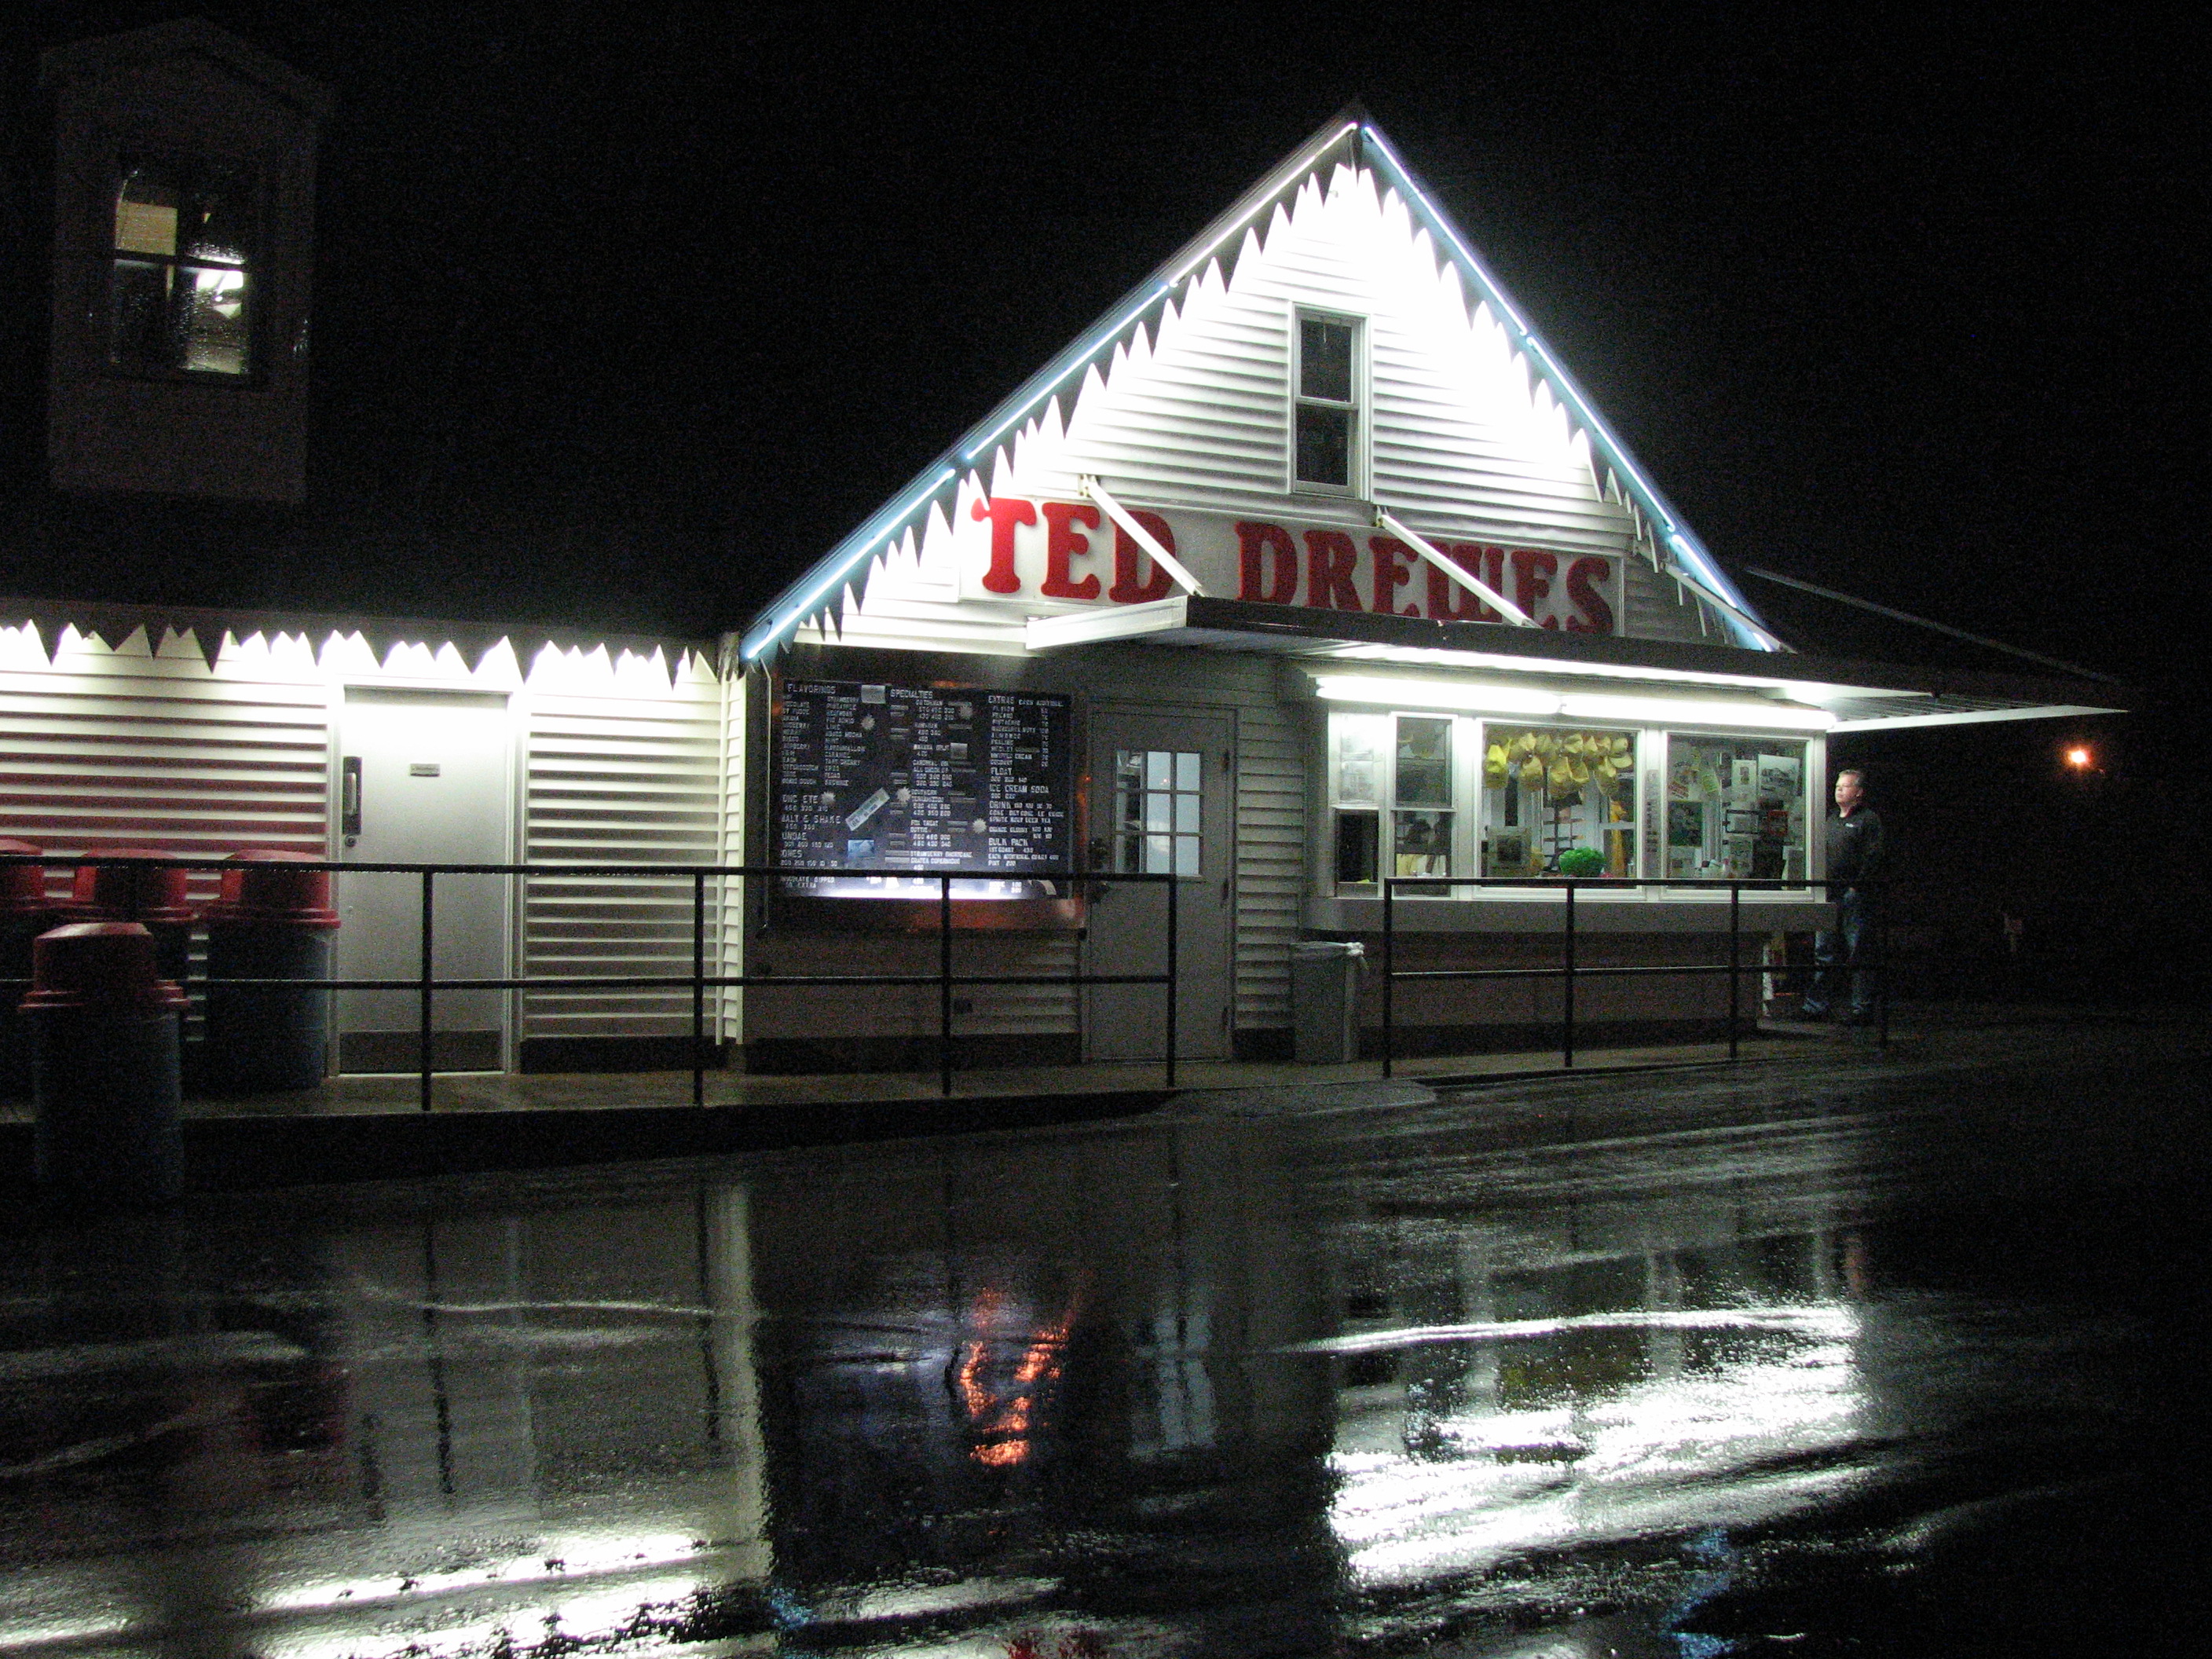 Ted Drewes Frozen Custard - 6726 Chippewa Street, Saint Louis, Missouri U.S.A. - March 18, 2009